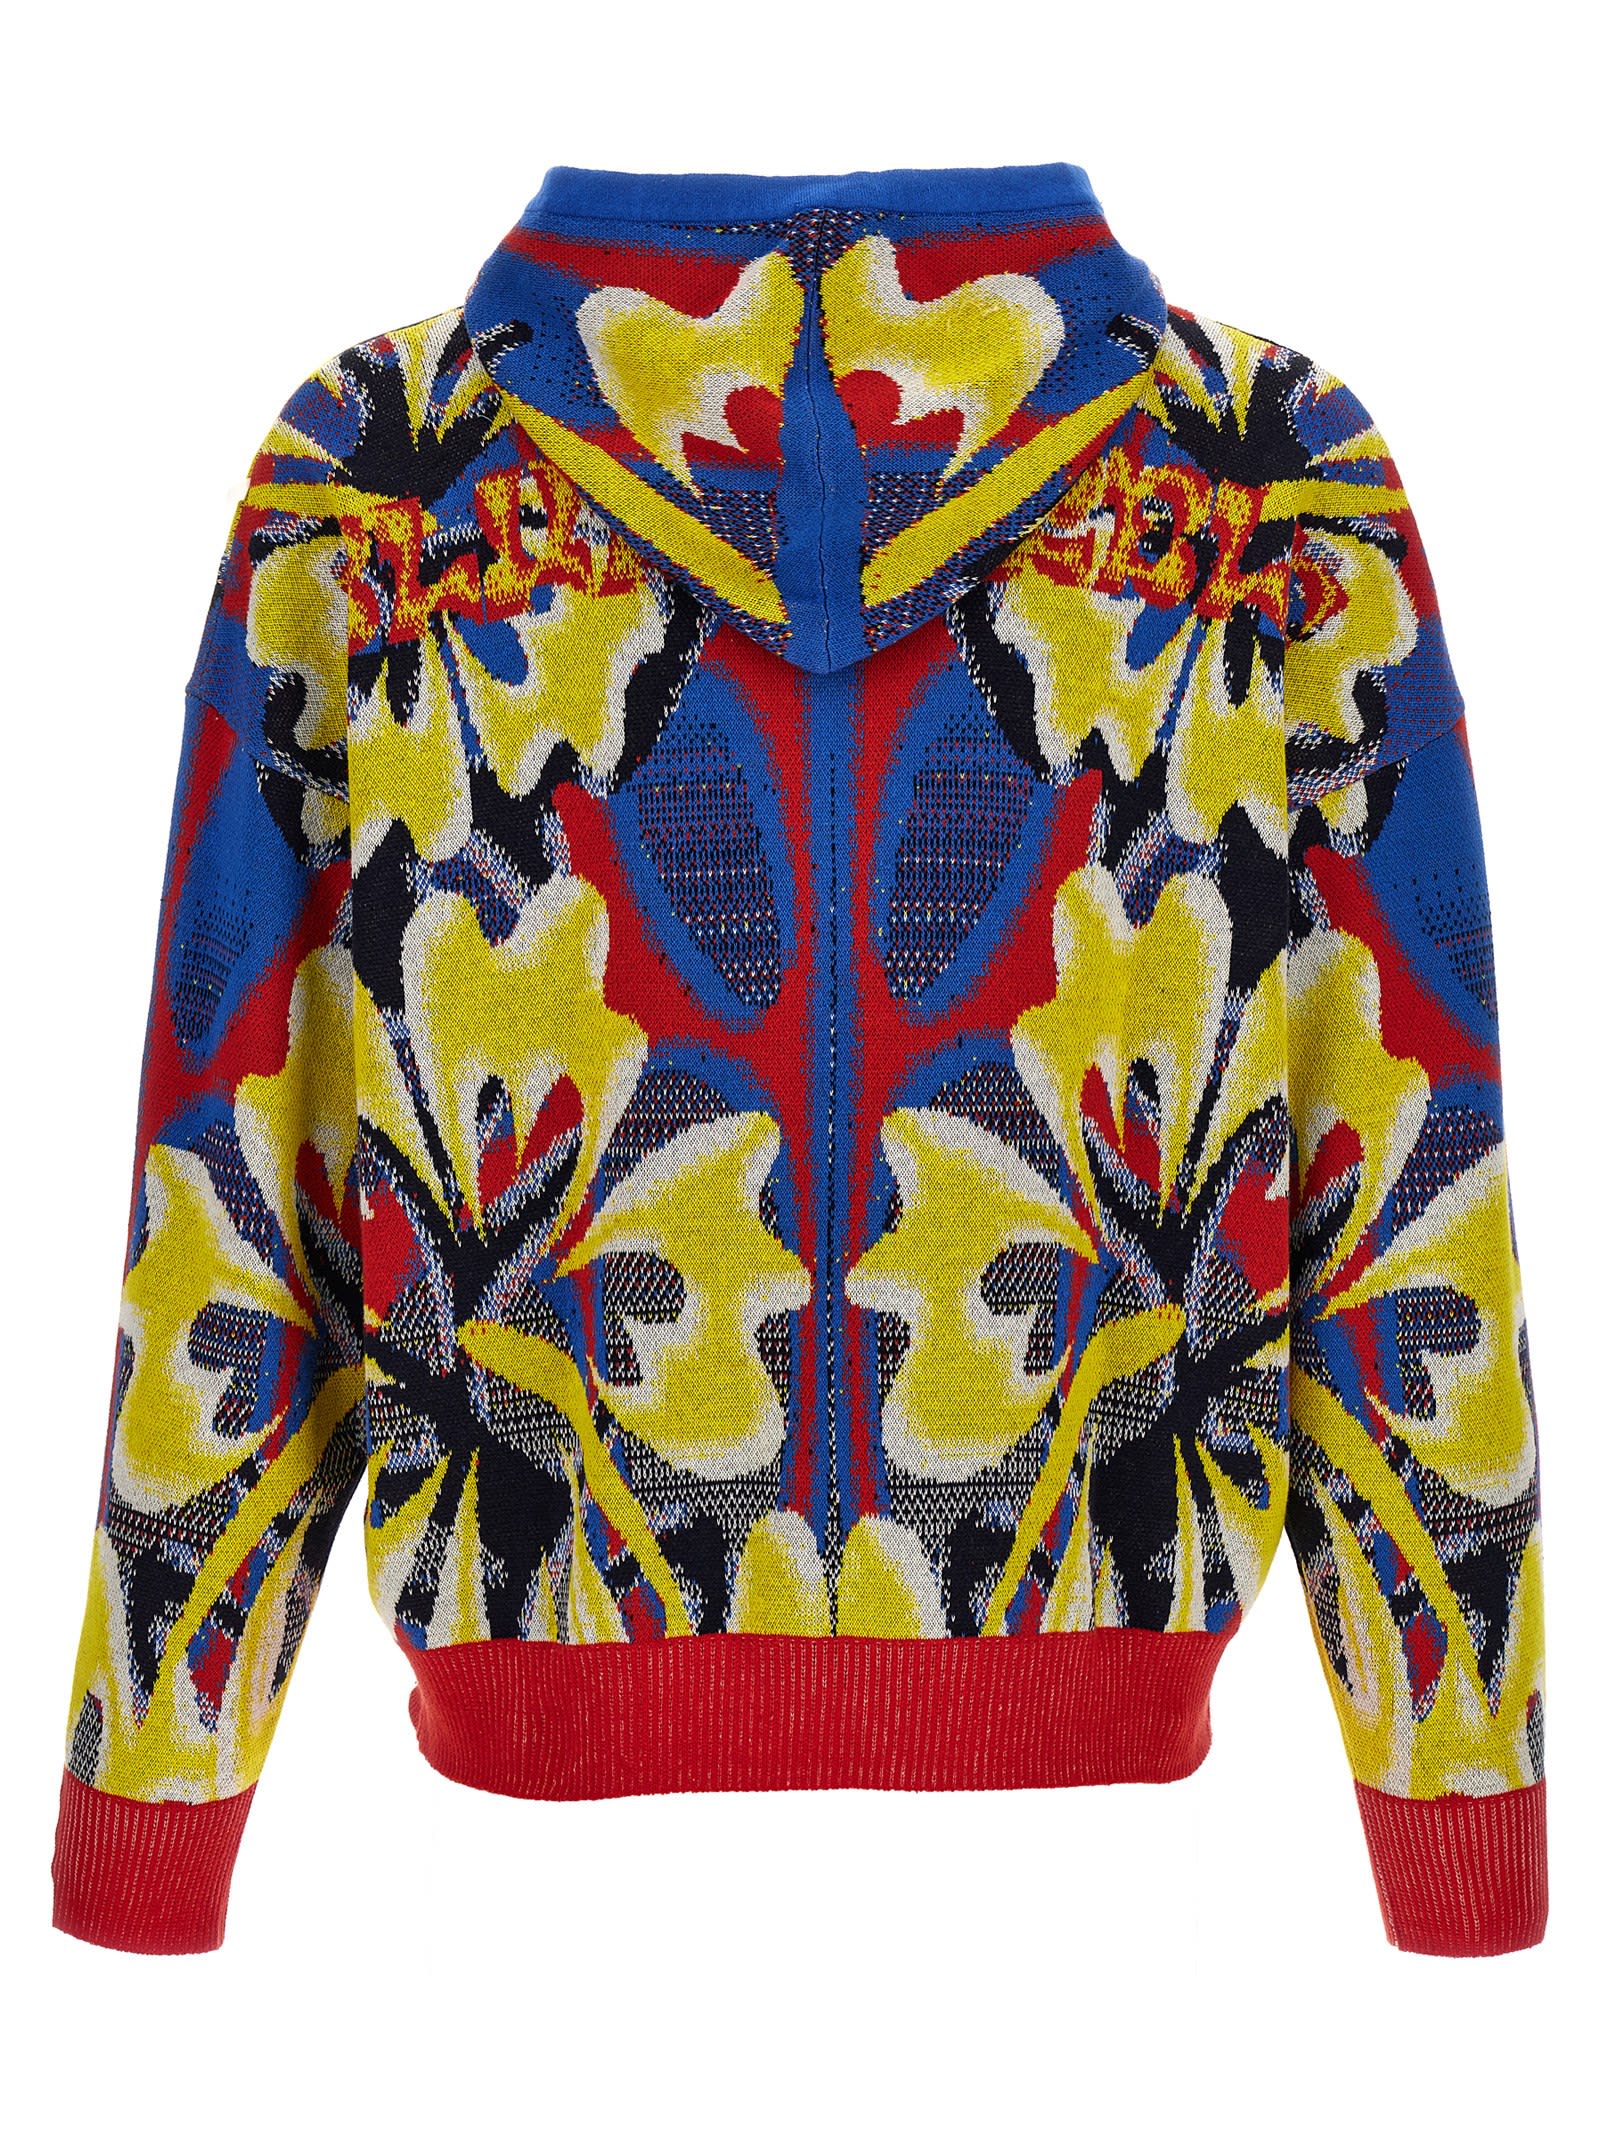 Shop Bluemarble Knit Jaquard Hoodie In Multicolor